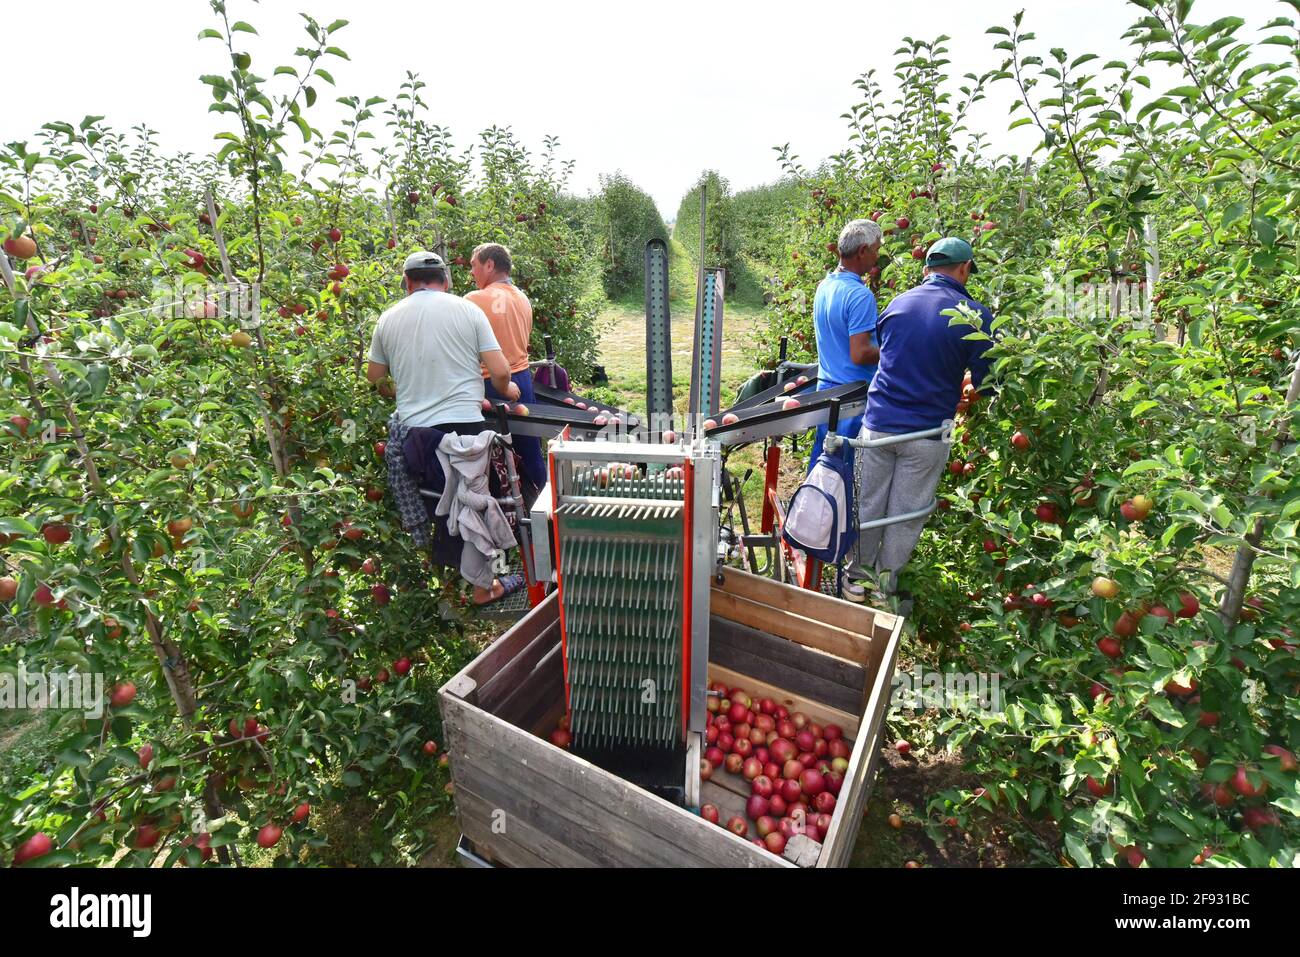 Ernteassistent an einer Maschine für die automatische Ernte von reifen Frische Äpfel auf einer Plantage Stockfoto